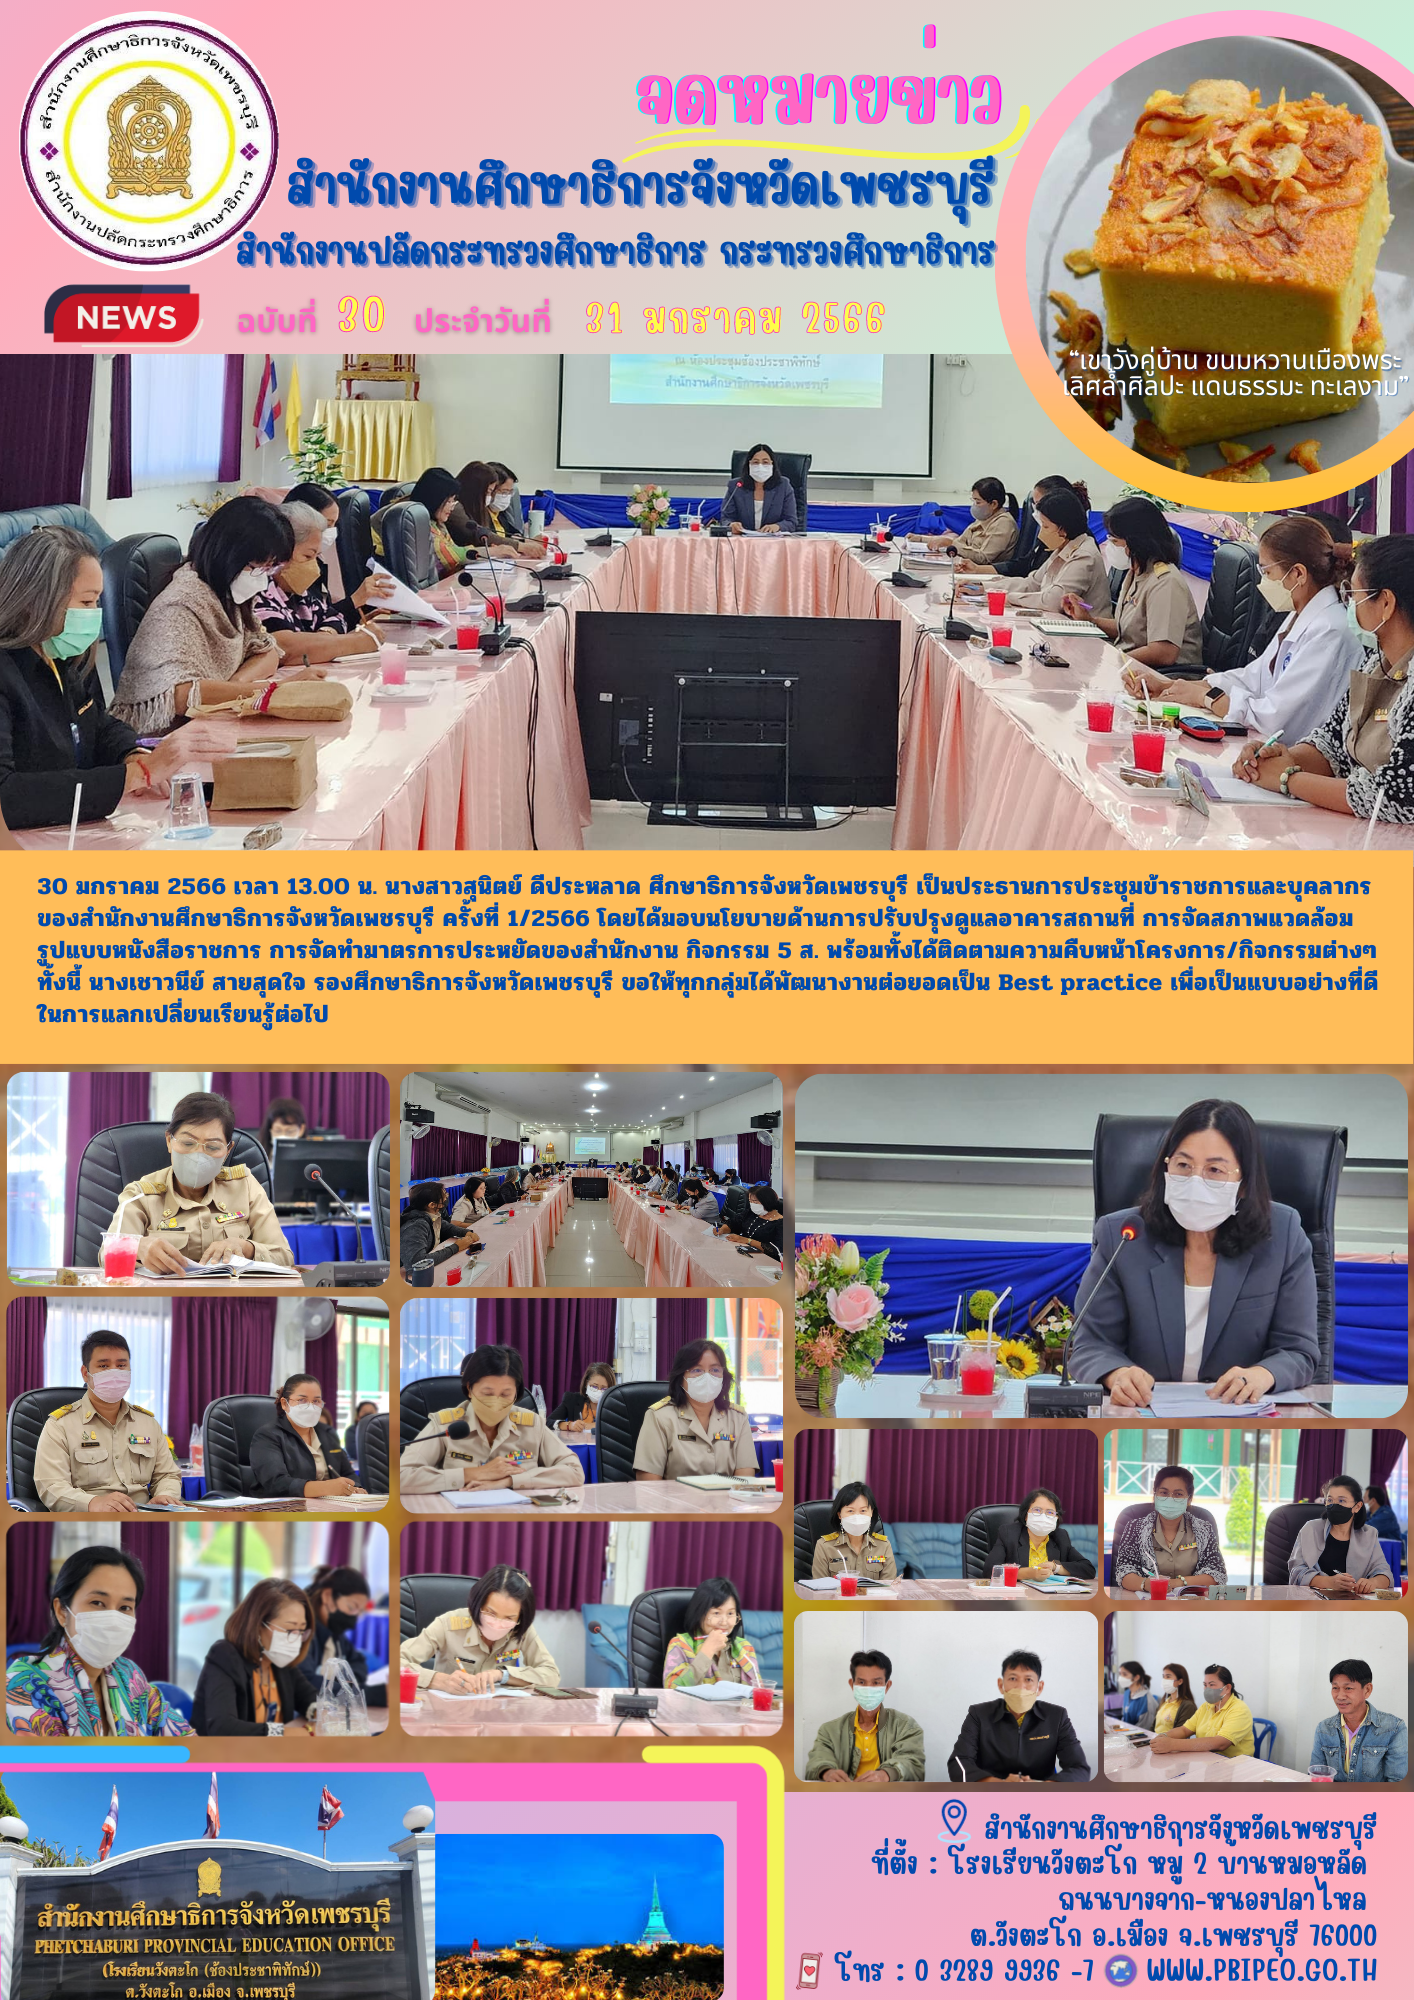 (ศธจ.เพชรบุรี)ประชุมข้าราชการและบุคลากรของสำนักงานศึกษาธิการจังหวัดเพชรบุรี ครั้งที่ 1/2566